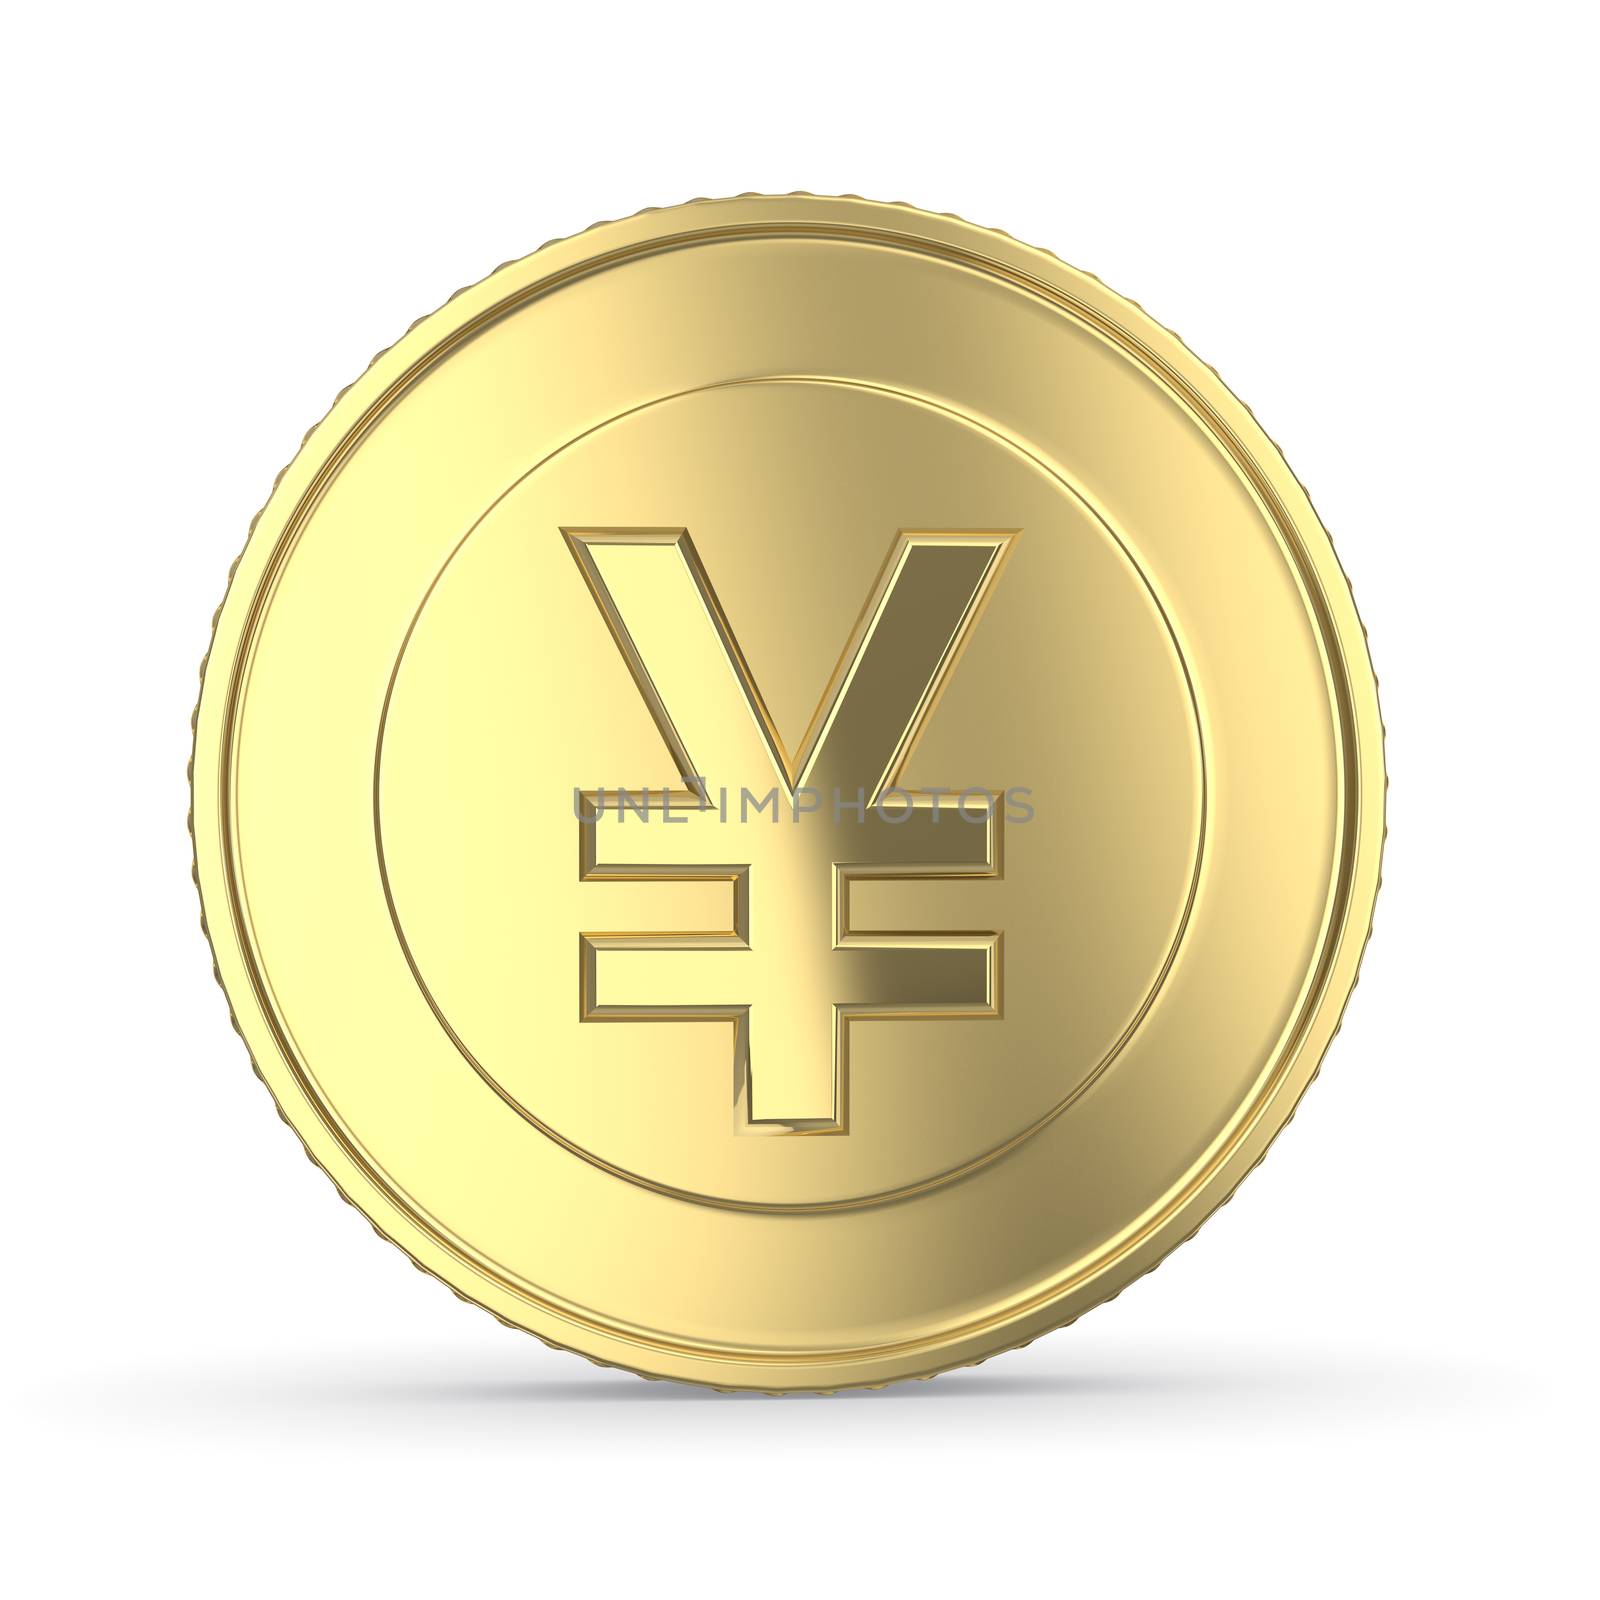 Golden yen coin by 123dartist